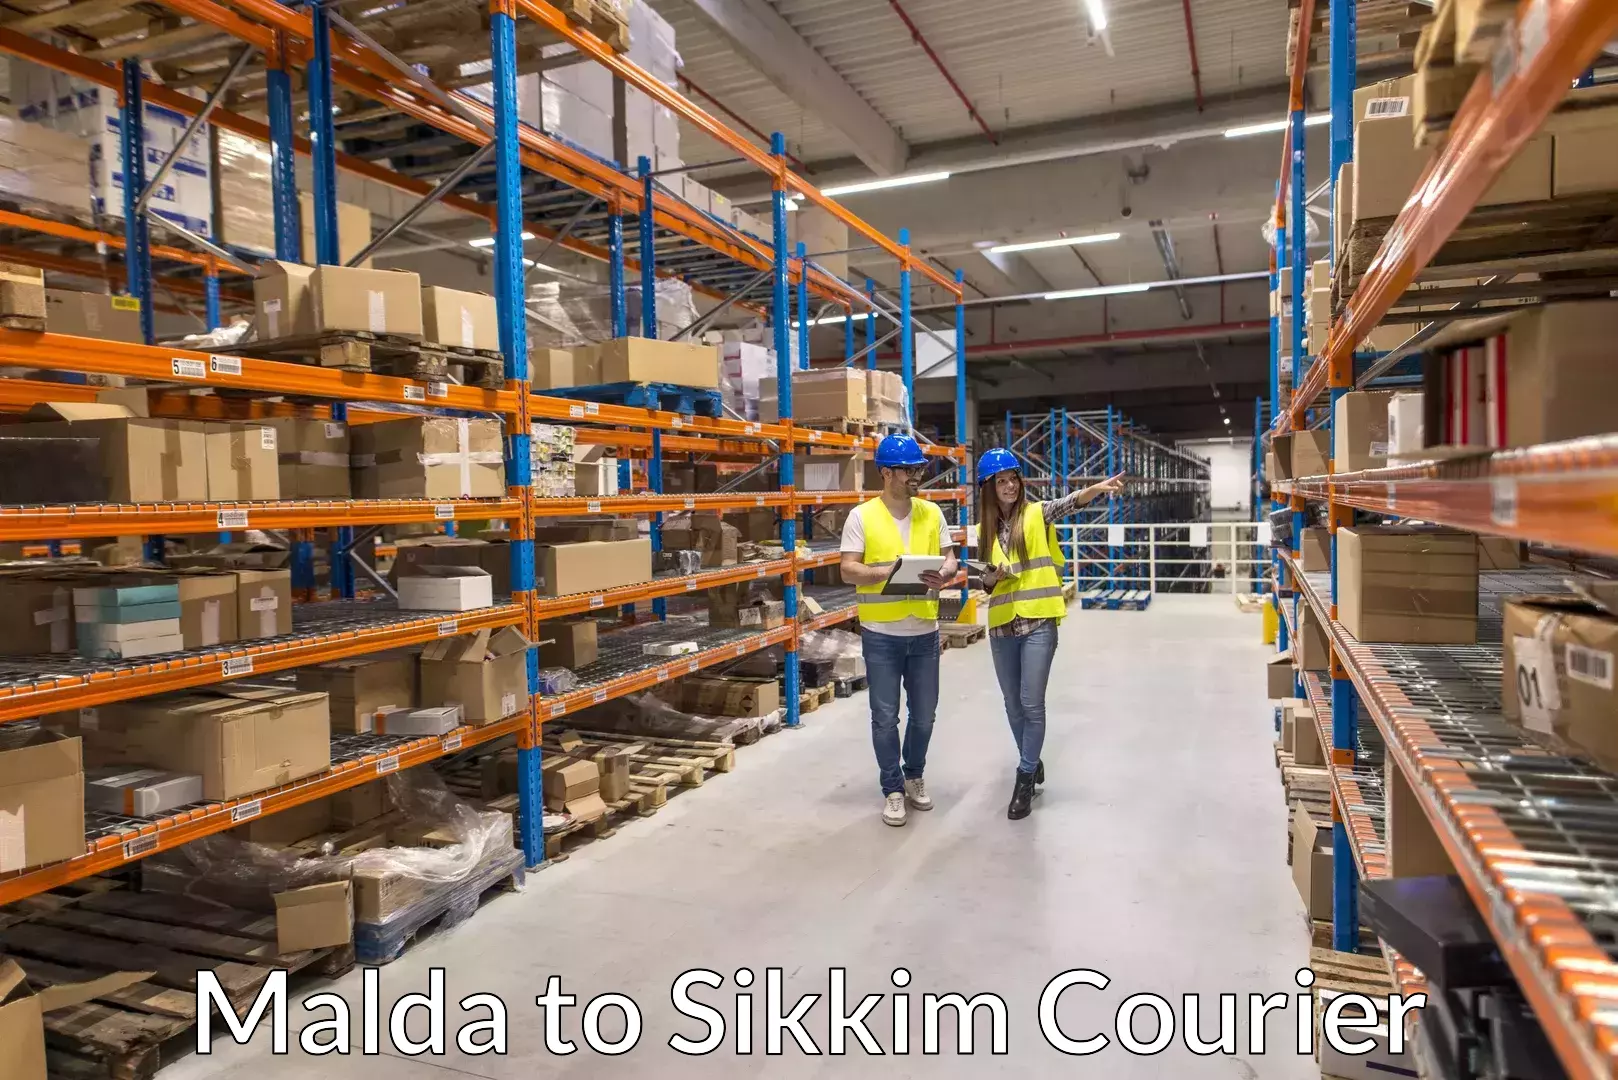 Luggage shipment specialists Malda to West Sikkim